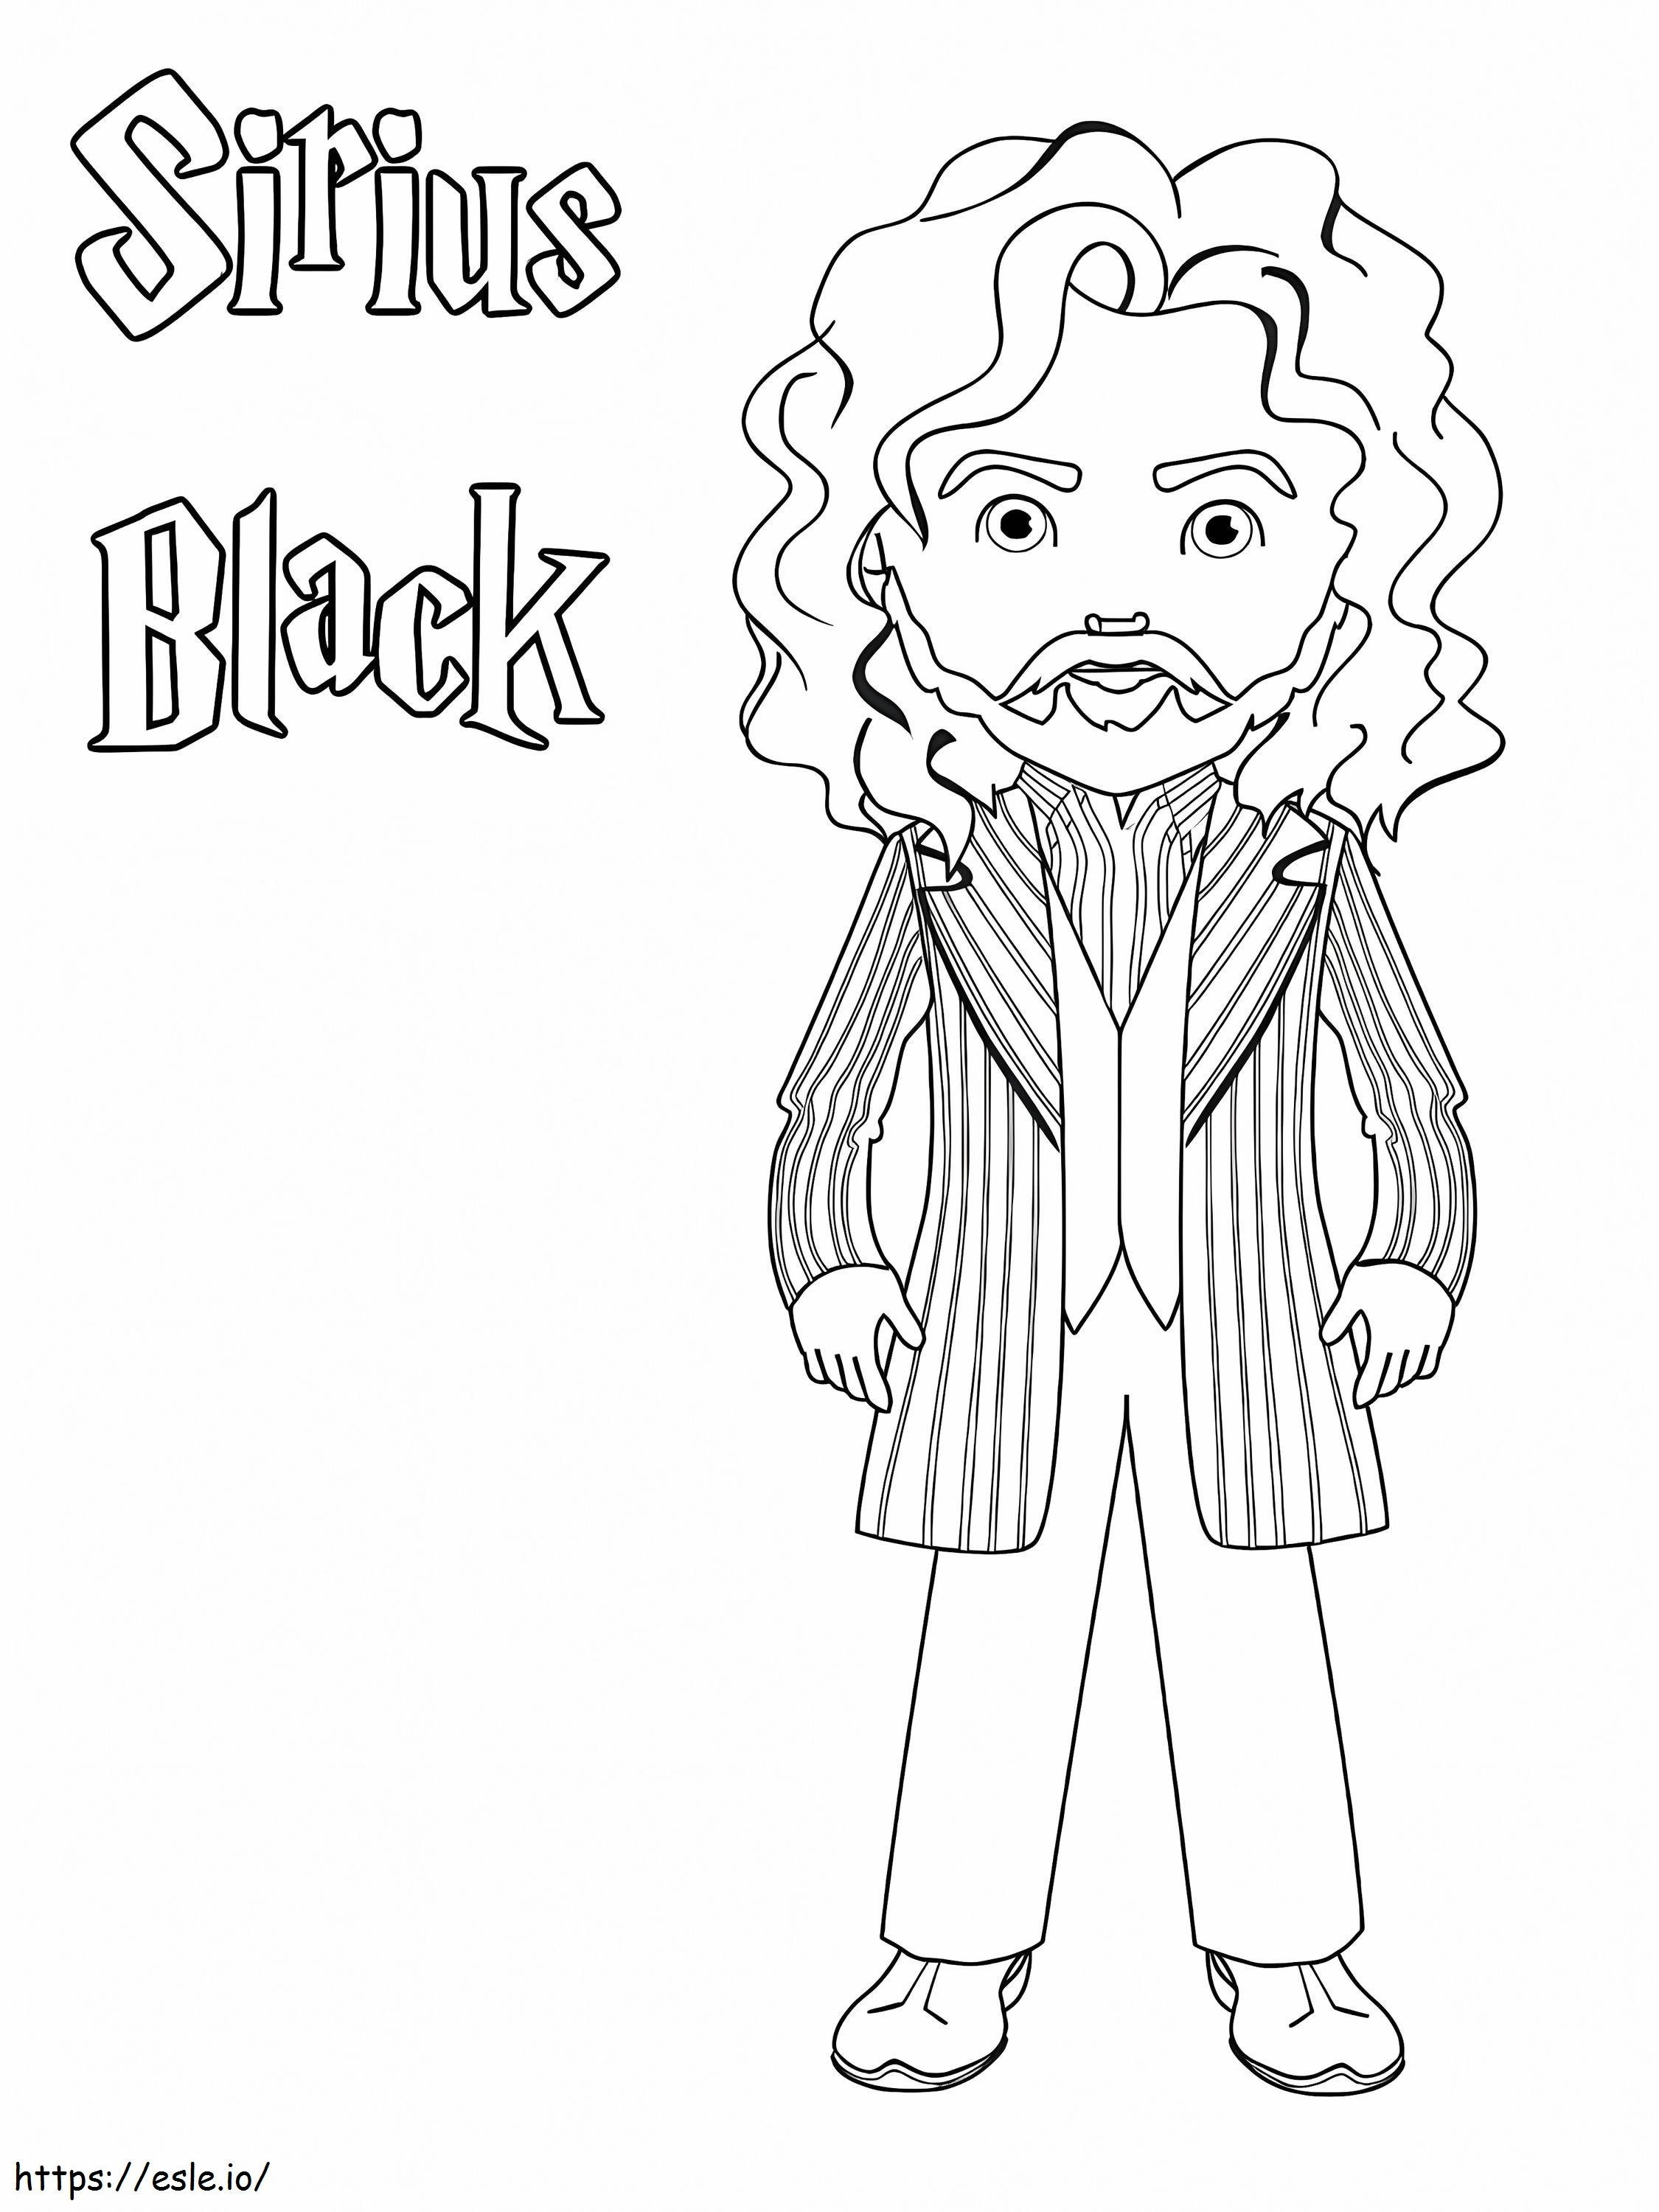 Sirius Black ausmalbilder